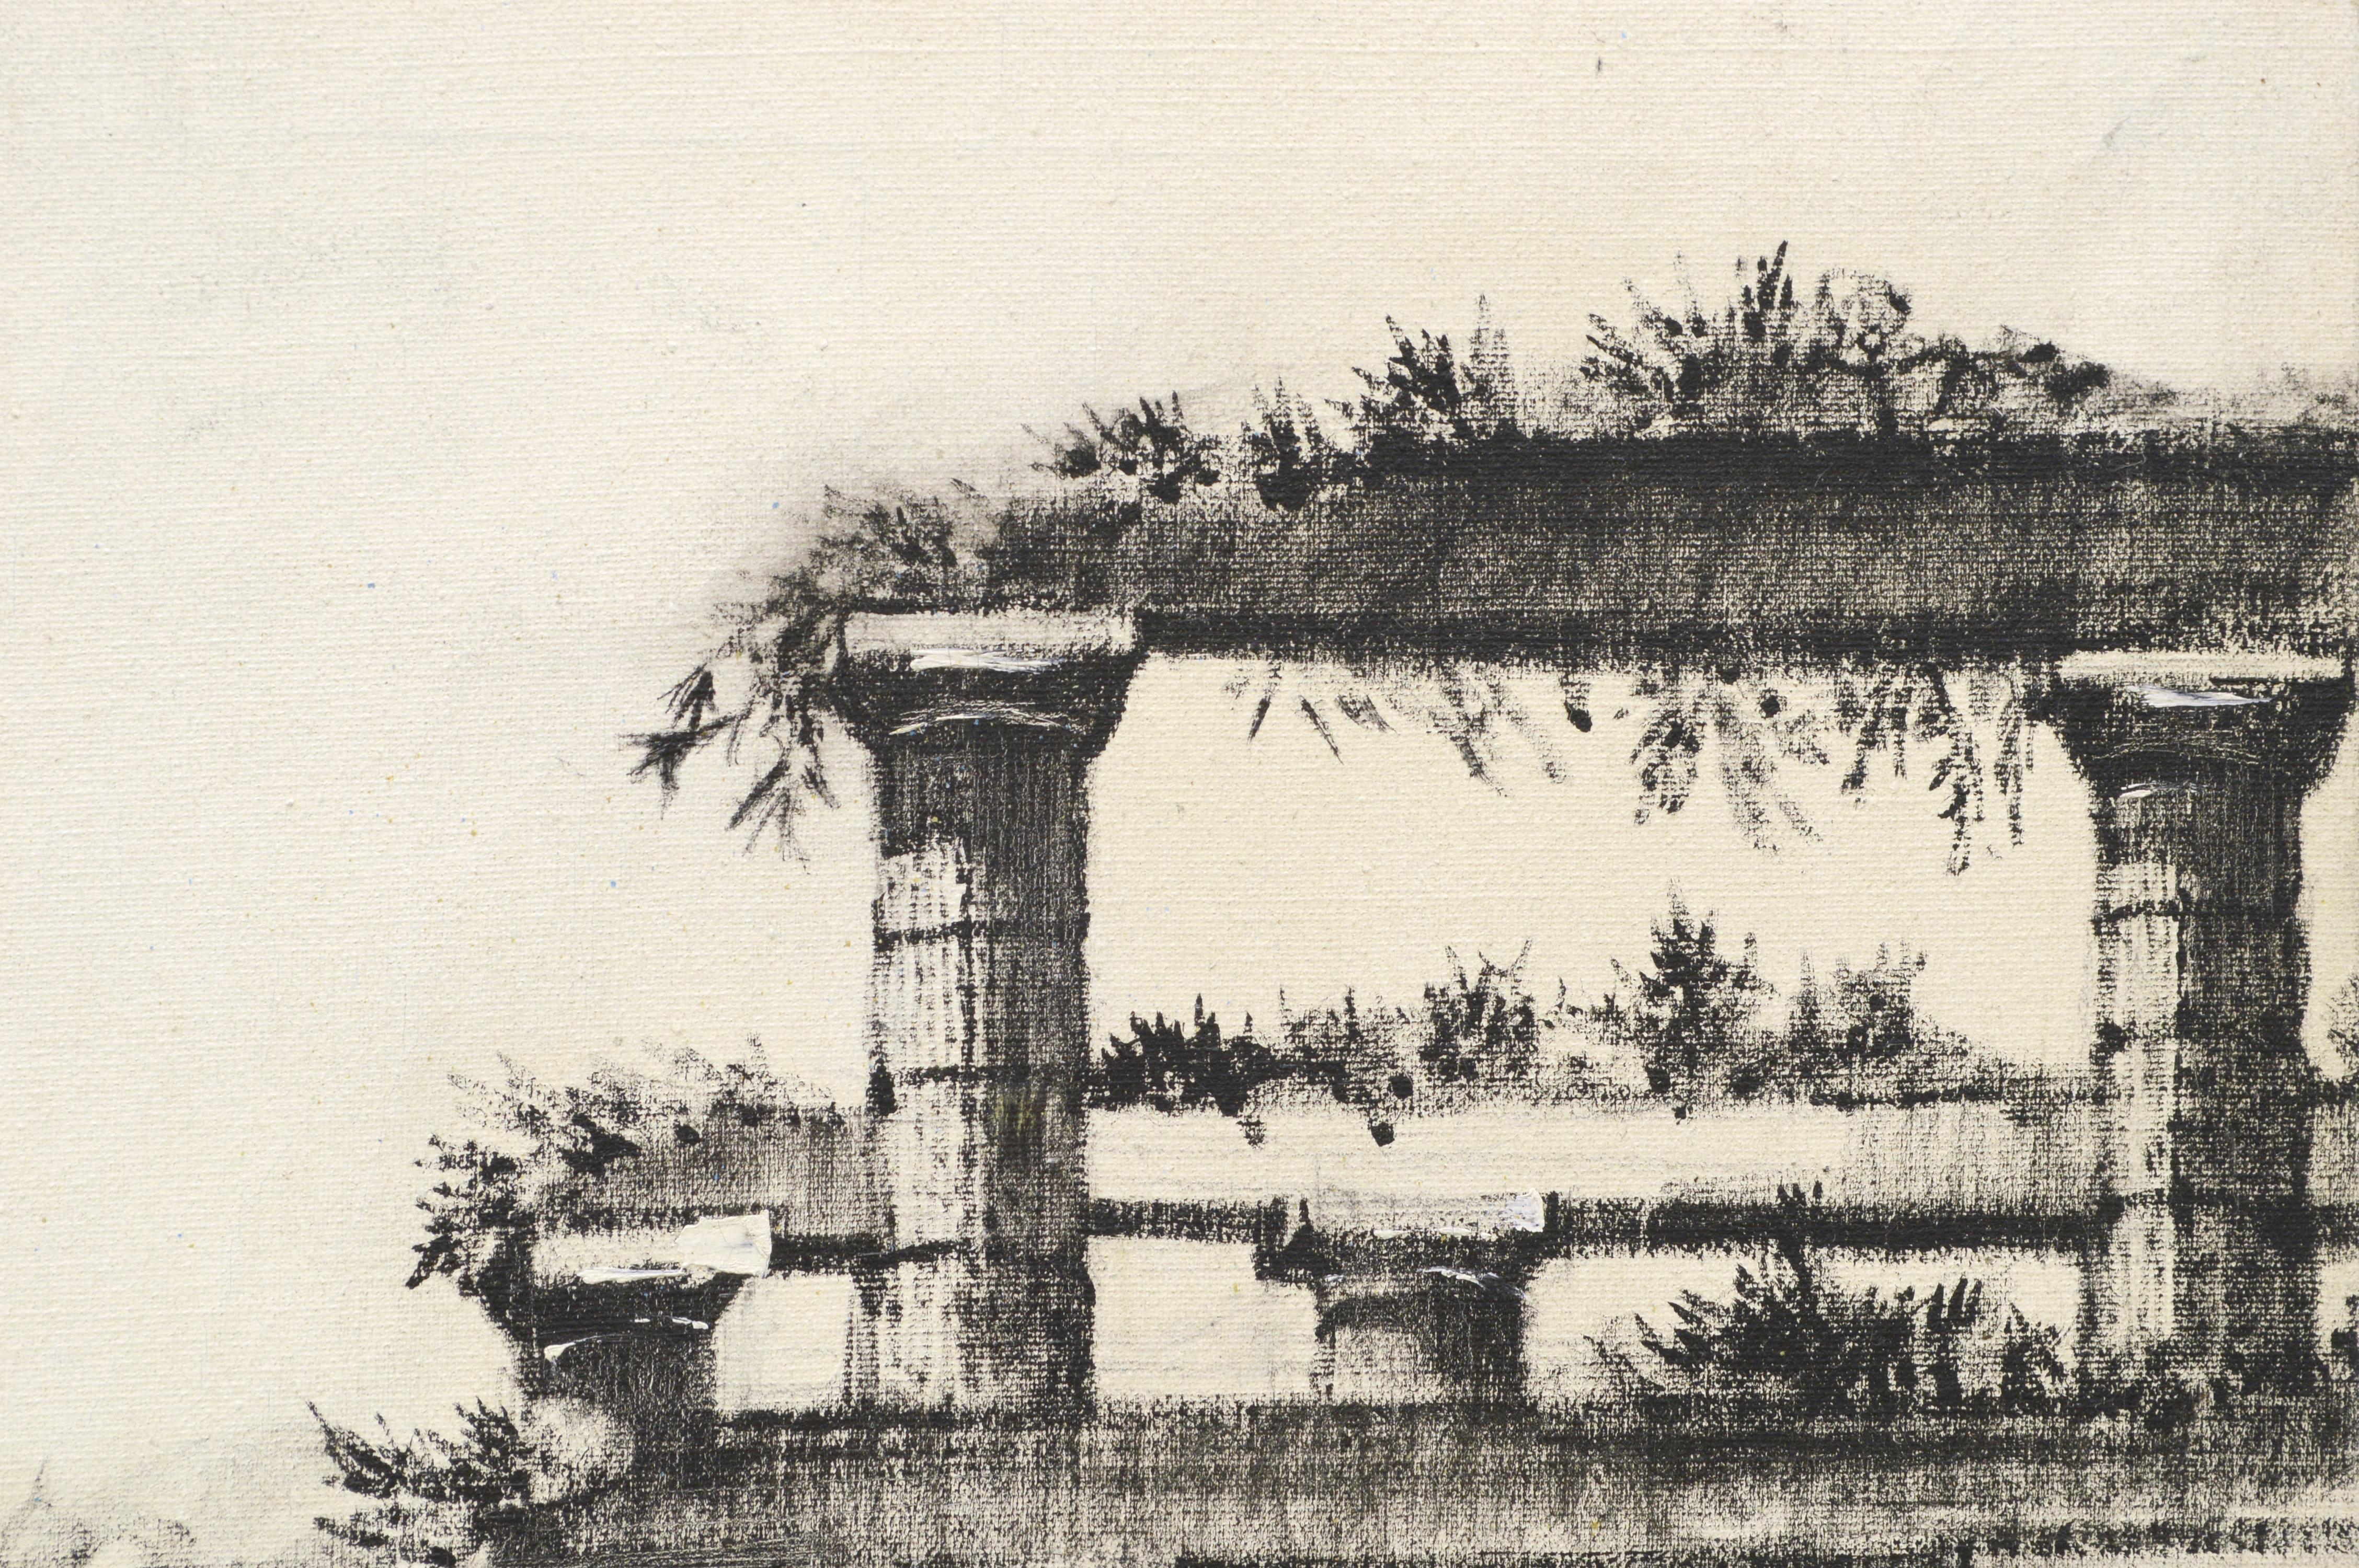 Monochrome Aqueduct Study - Beige Landscape Painting by C. Francisco